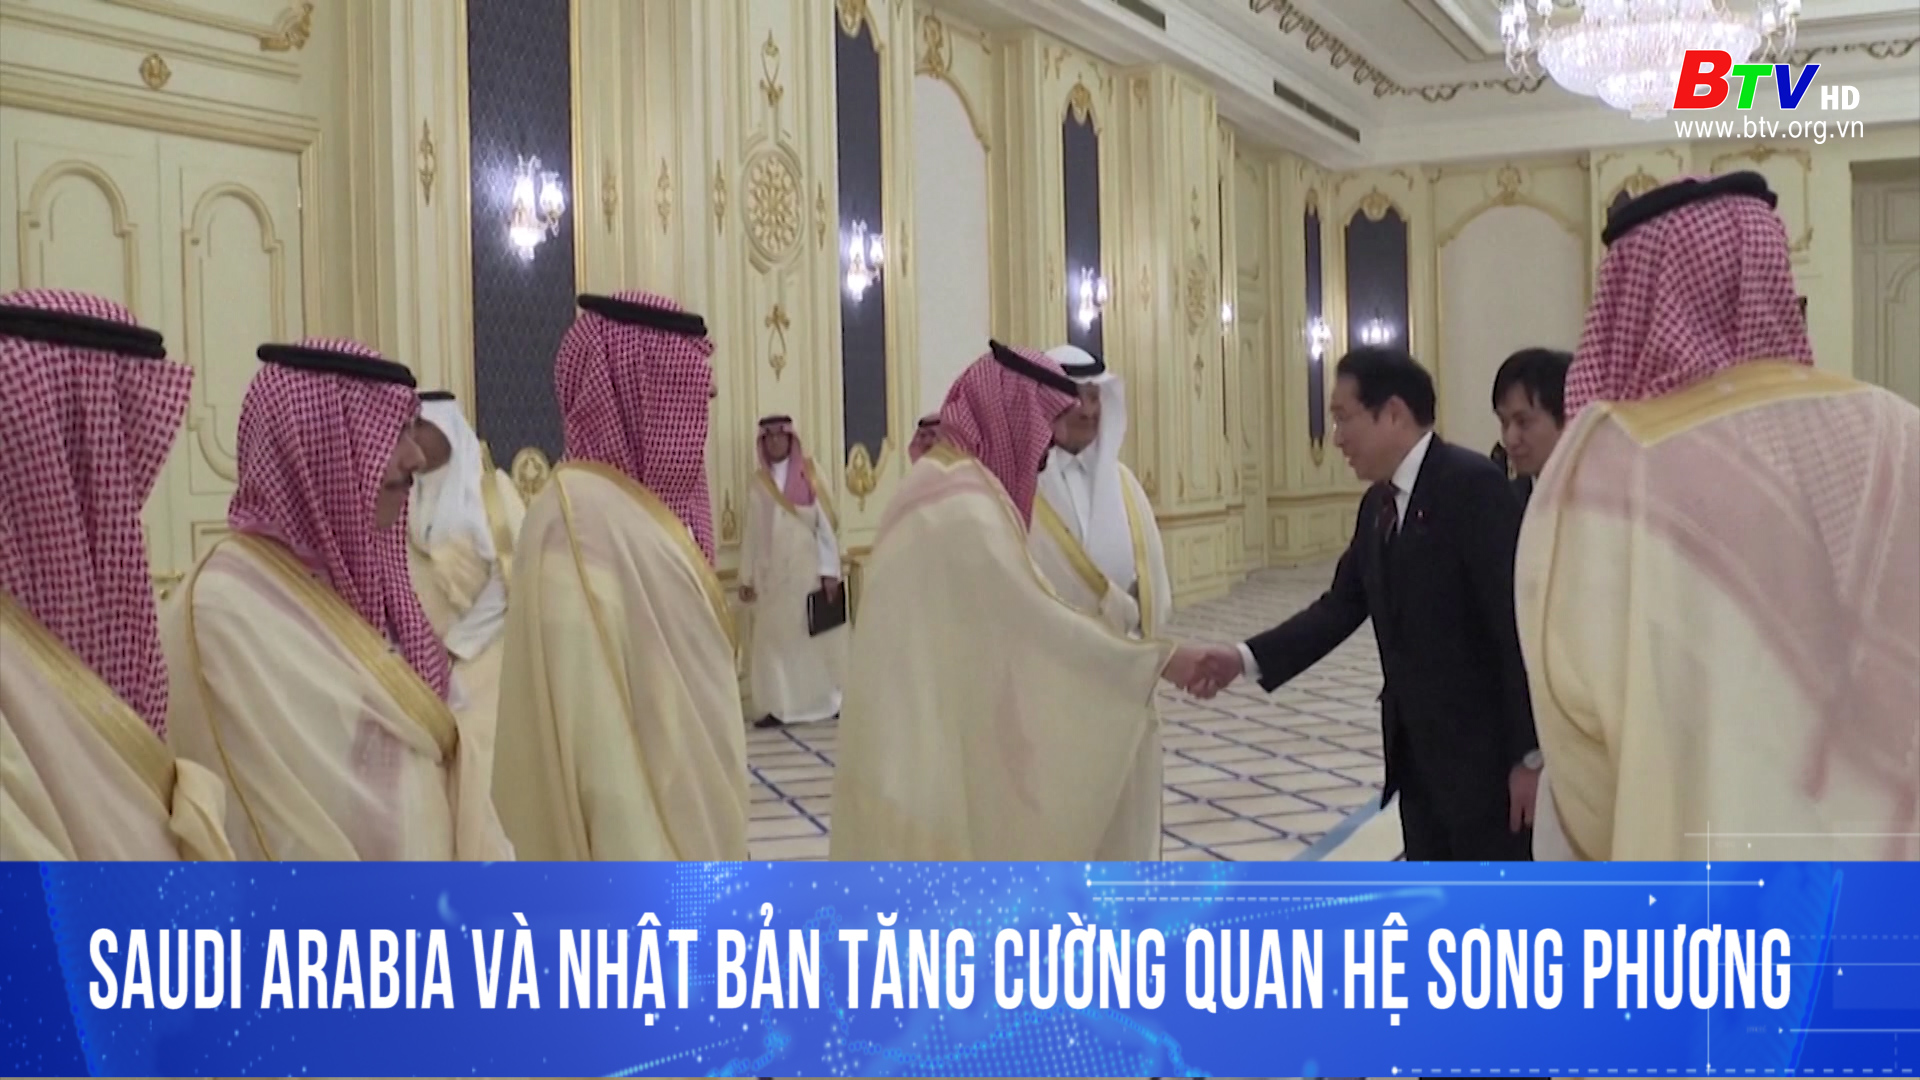 Saudi Arabia và Nhật Bản tăng cường quan hệ song phương